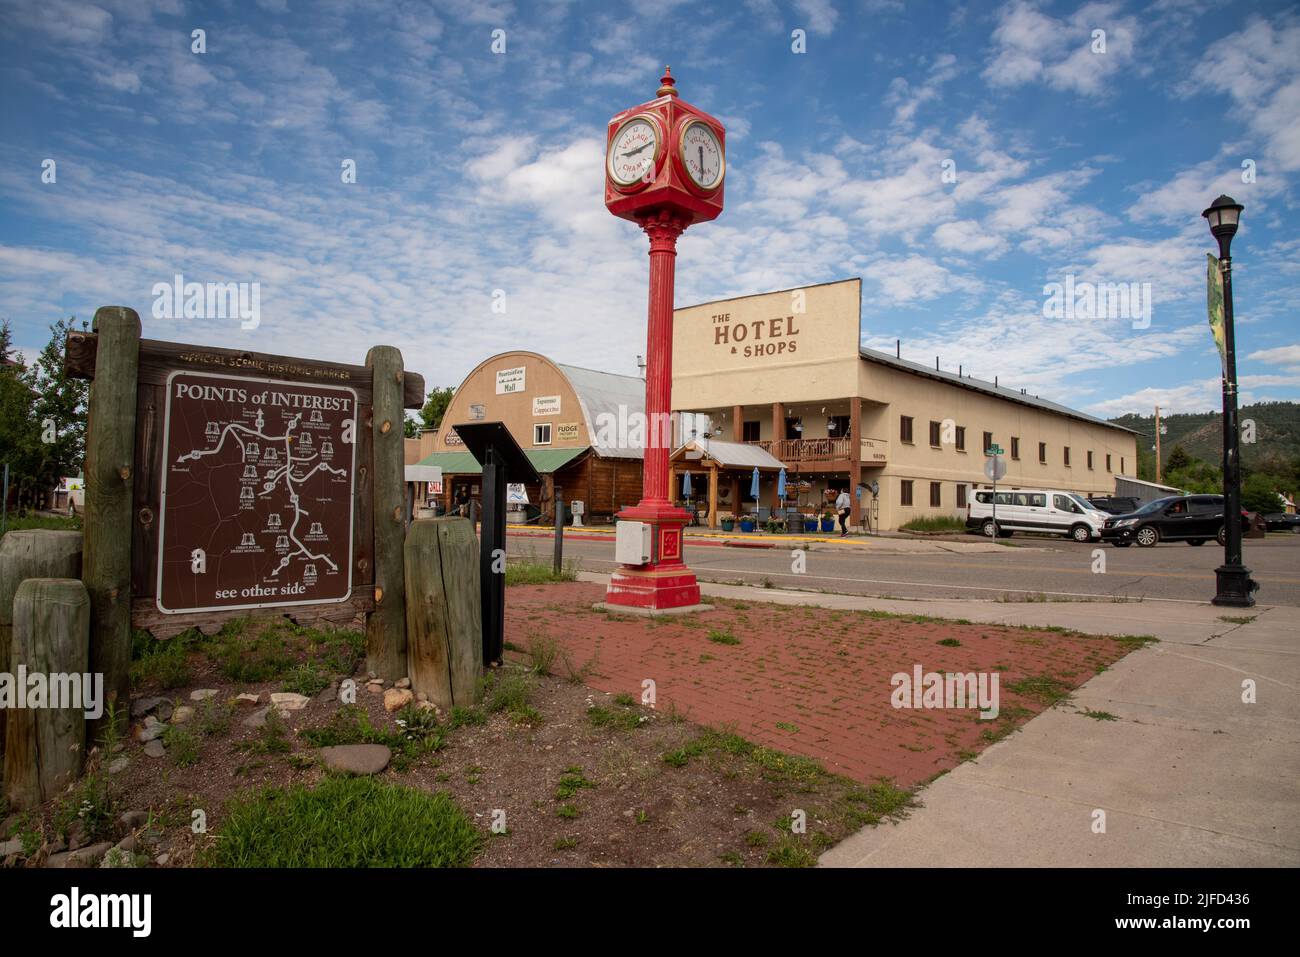 Centro di Chama, New Mexico, guardando attraverso un cartello che segna i punti di interesse, un luminoso orologio a piedistallo rosso e l'hotel e negozi. Foto Stock